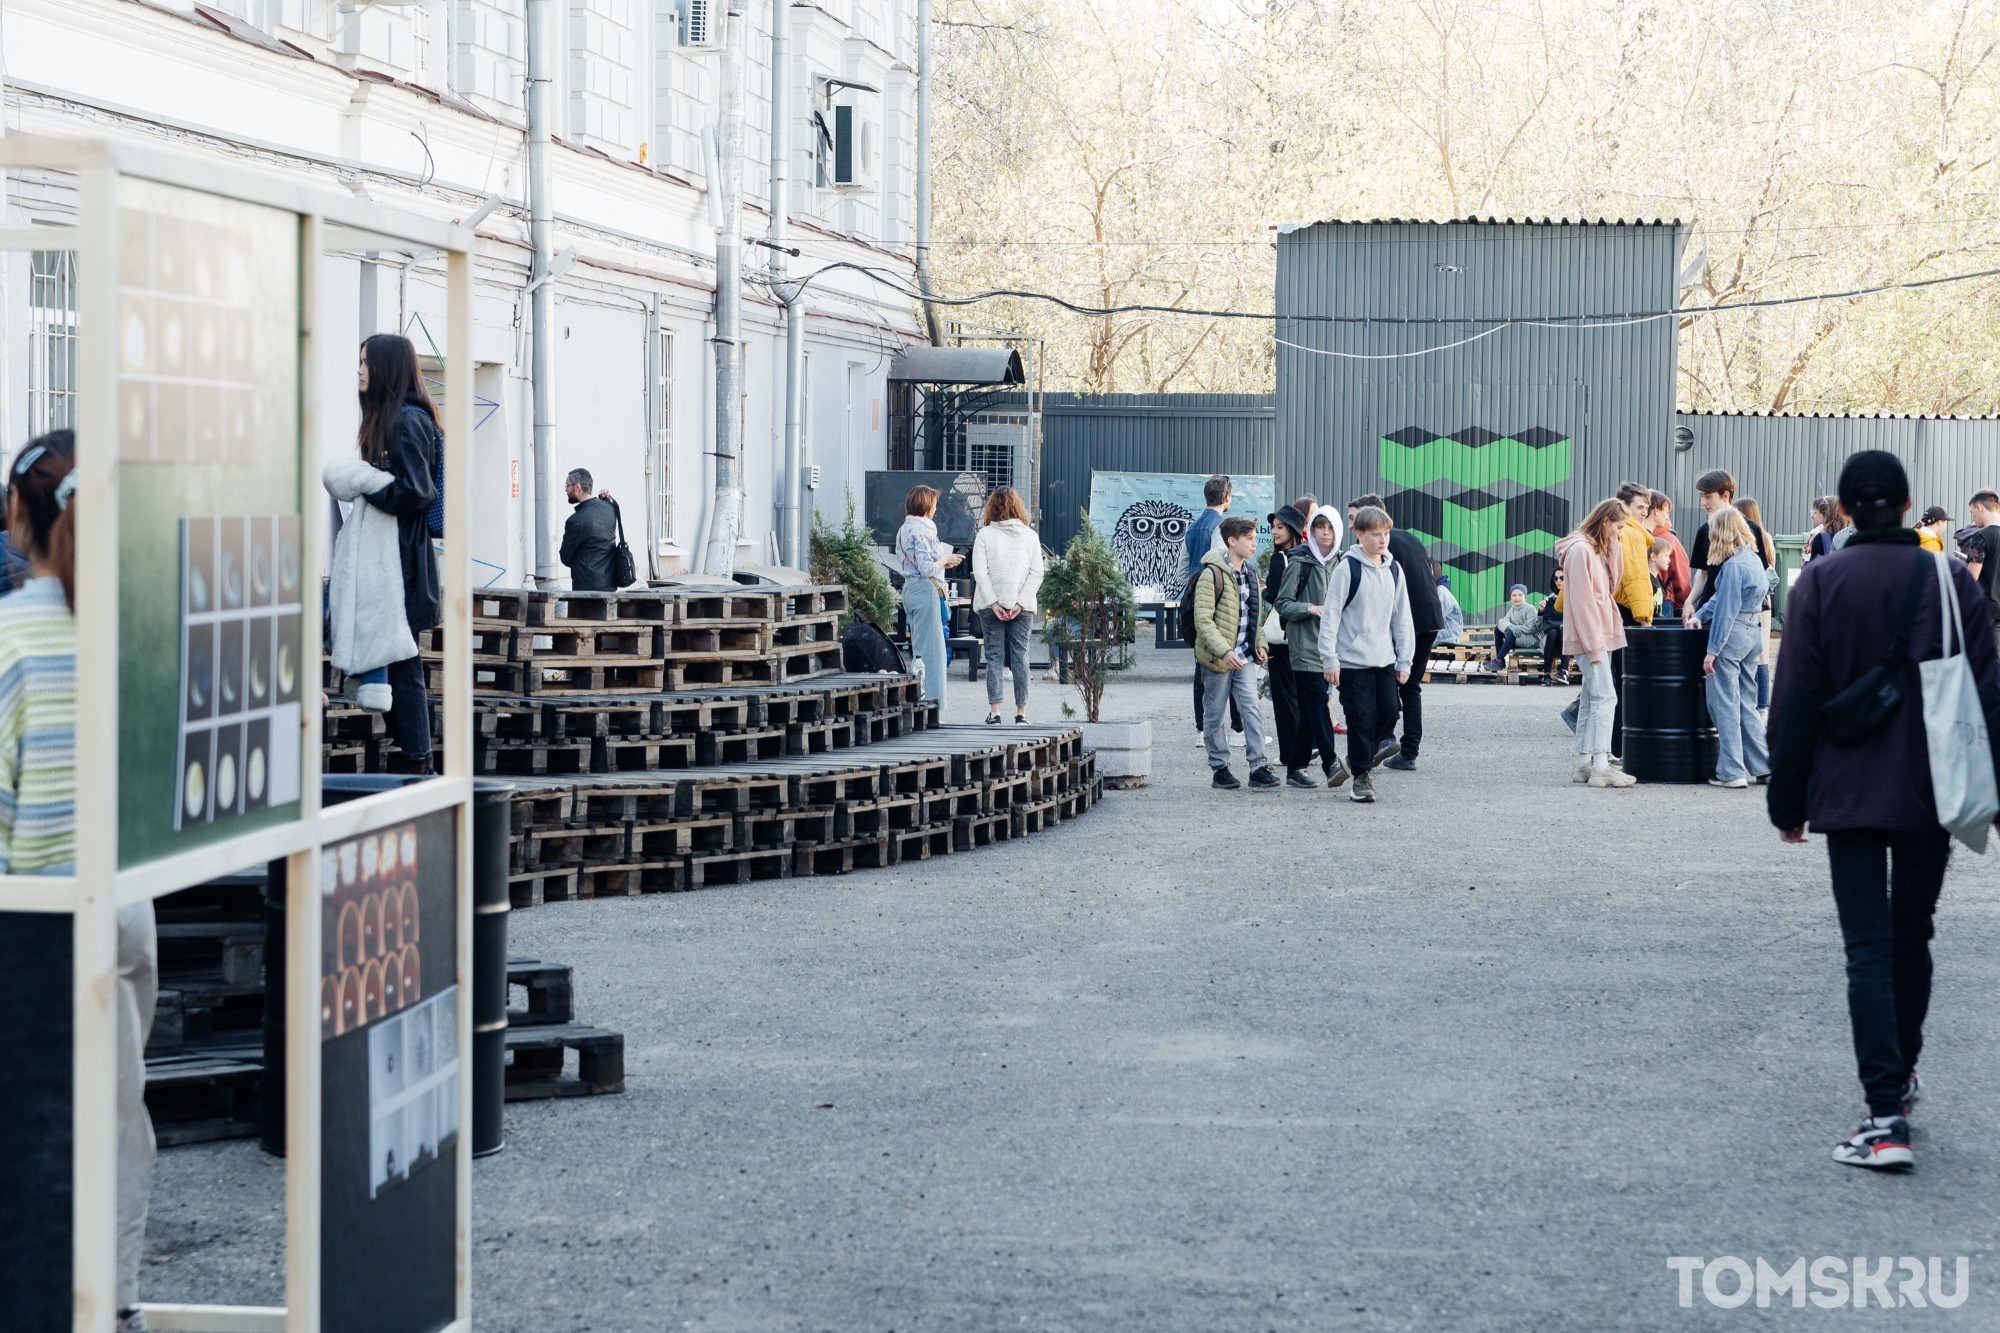 Лекции, выставки и творчество: в Томске открылся «Инженерный дворик»